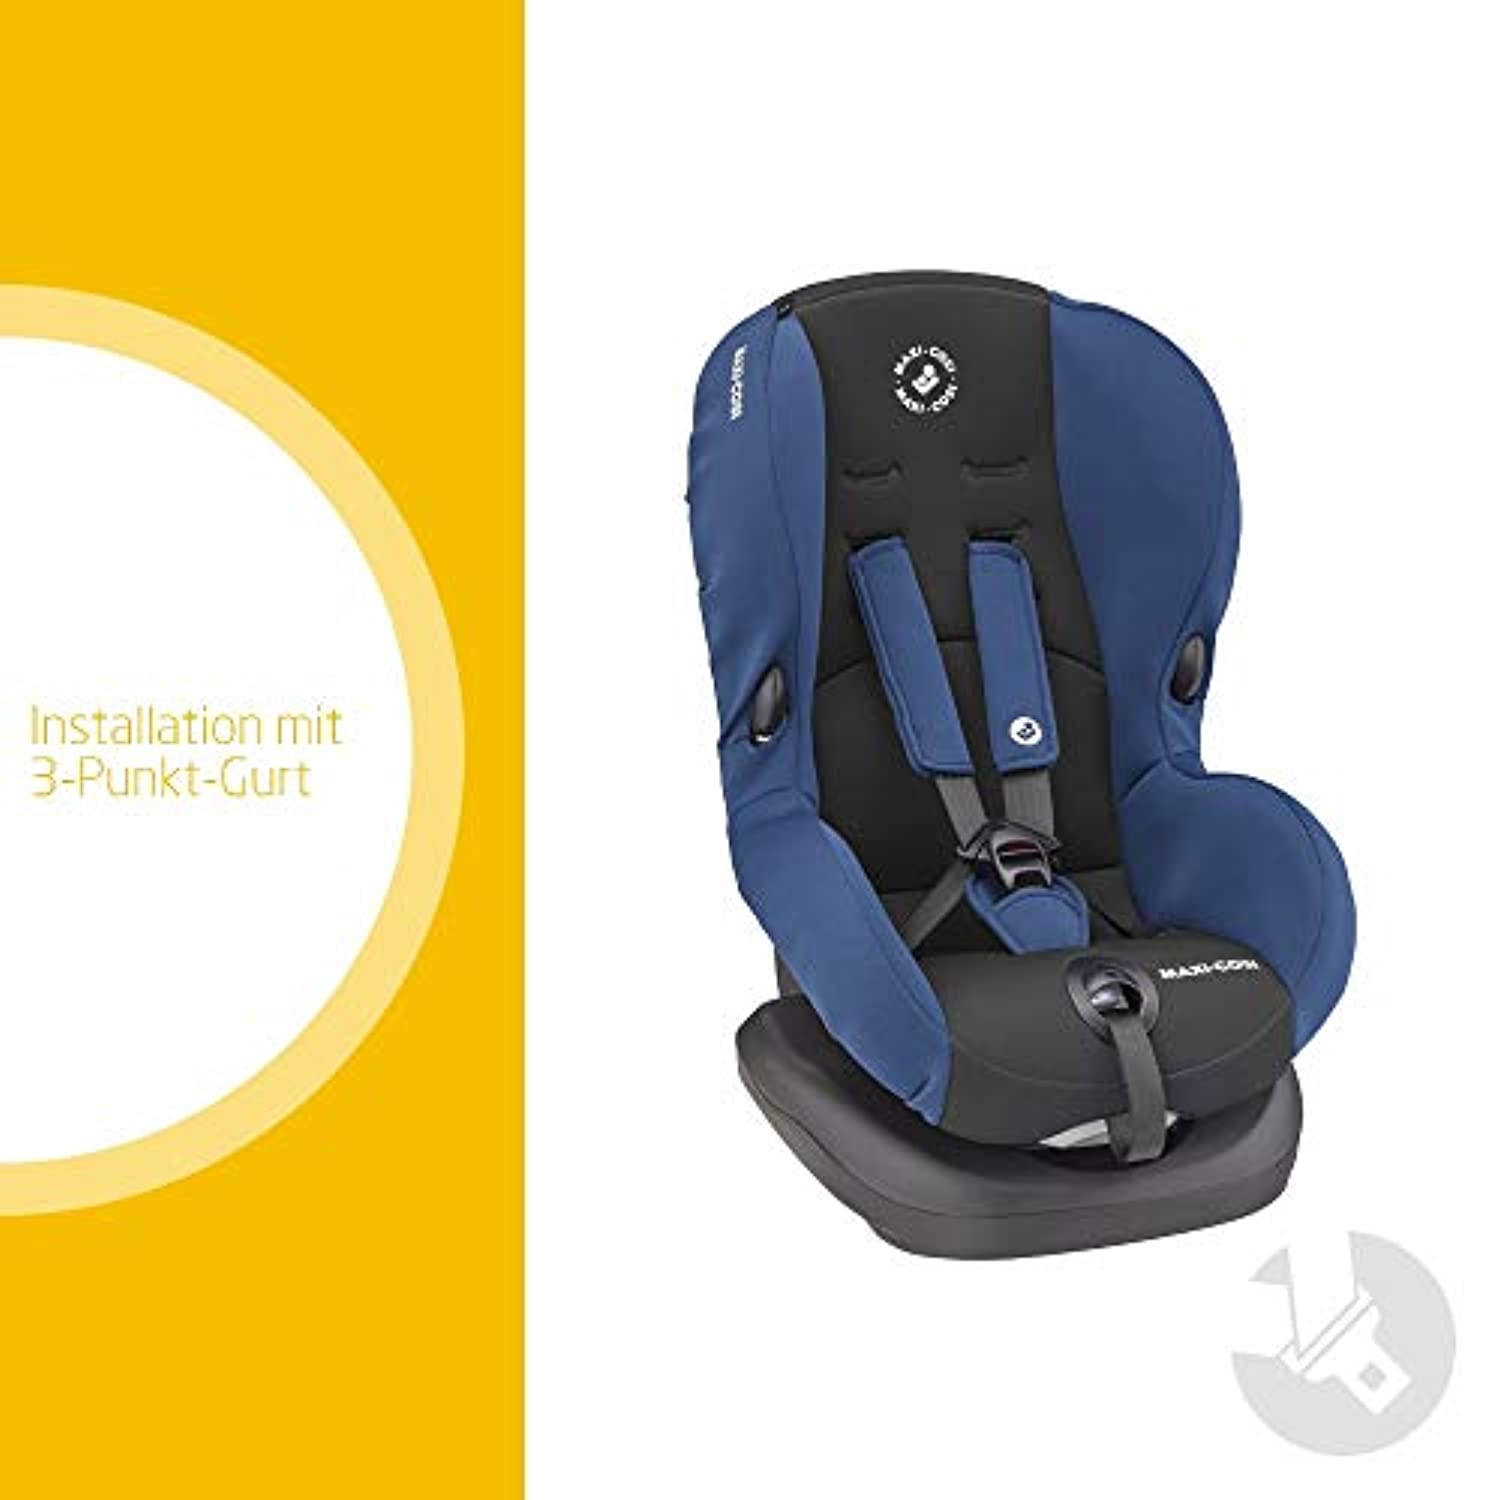 Isofix Kindersitz - Sicherheit & Komfort für Ihr Kind - StrawPoll